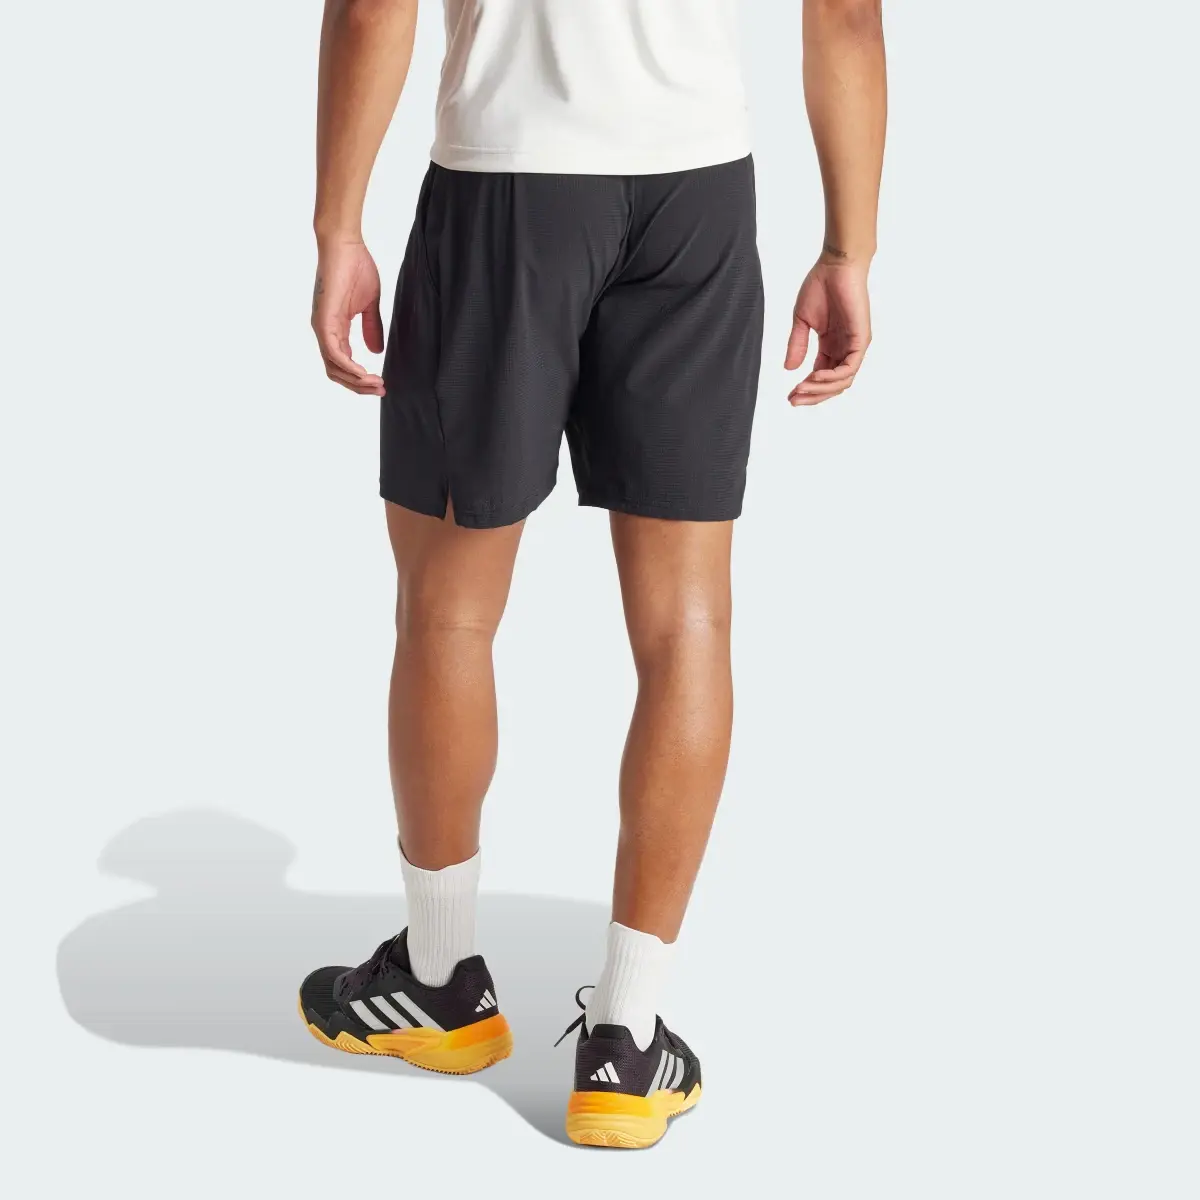 Adidas Shorts Ergo para Tenis. 3